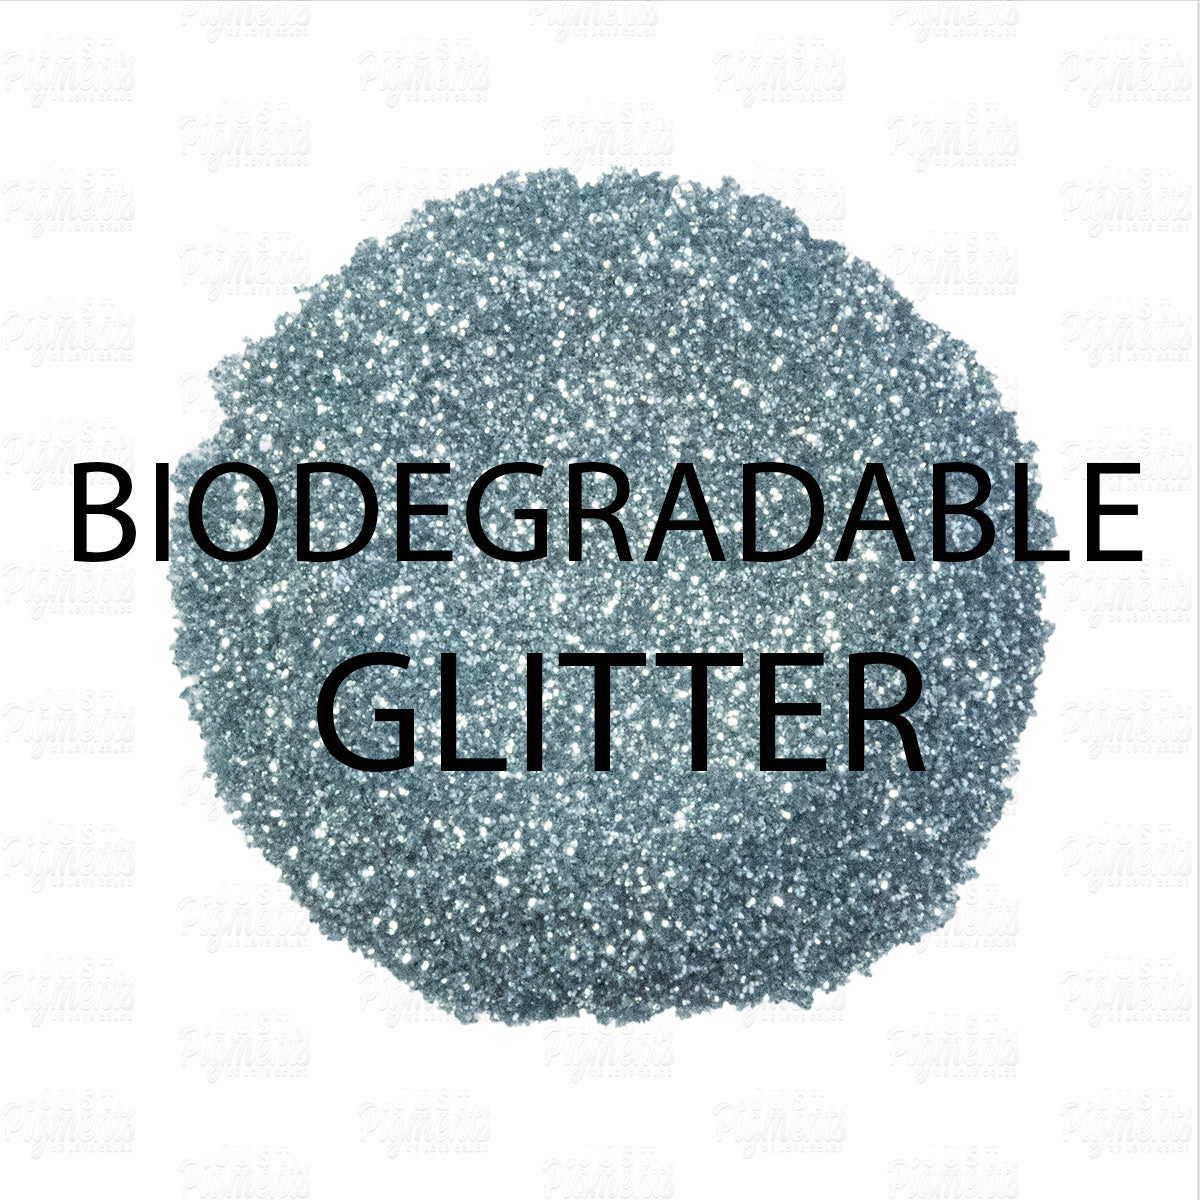 Bio Glitter Silver